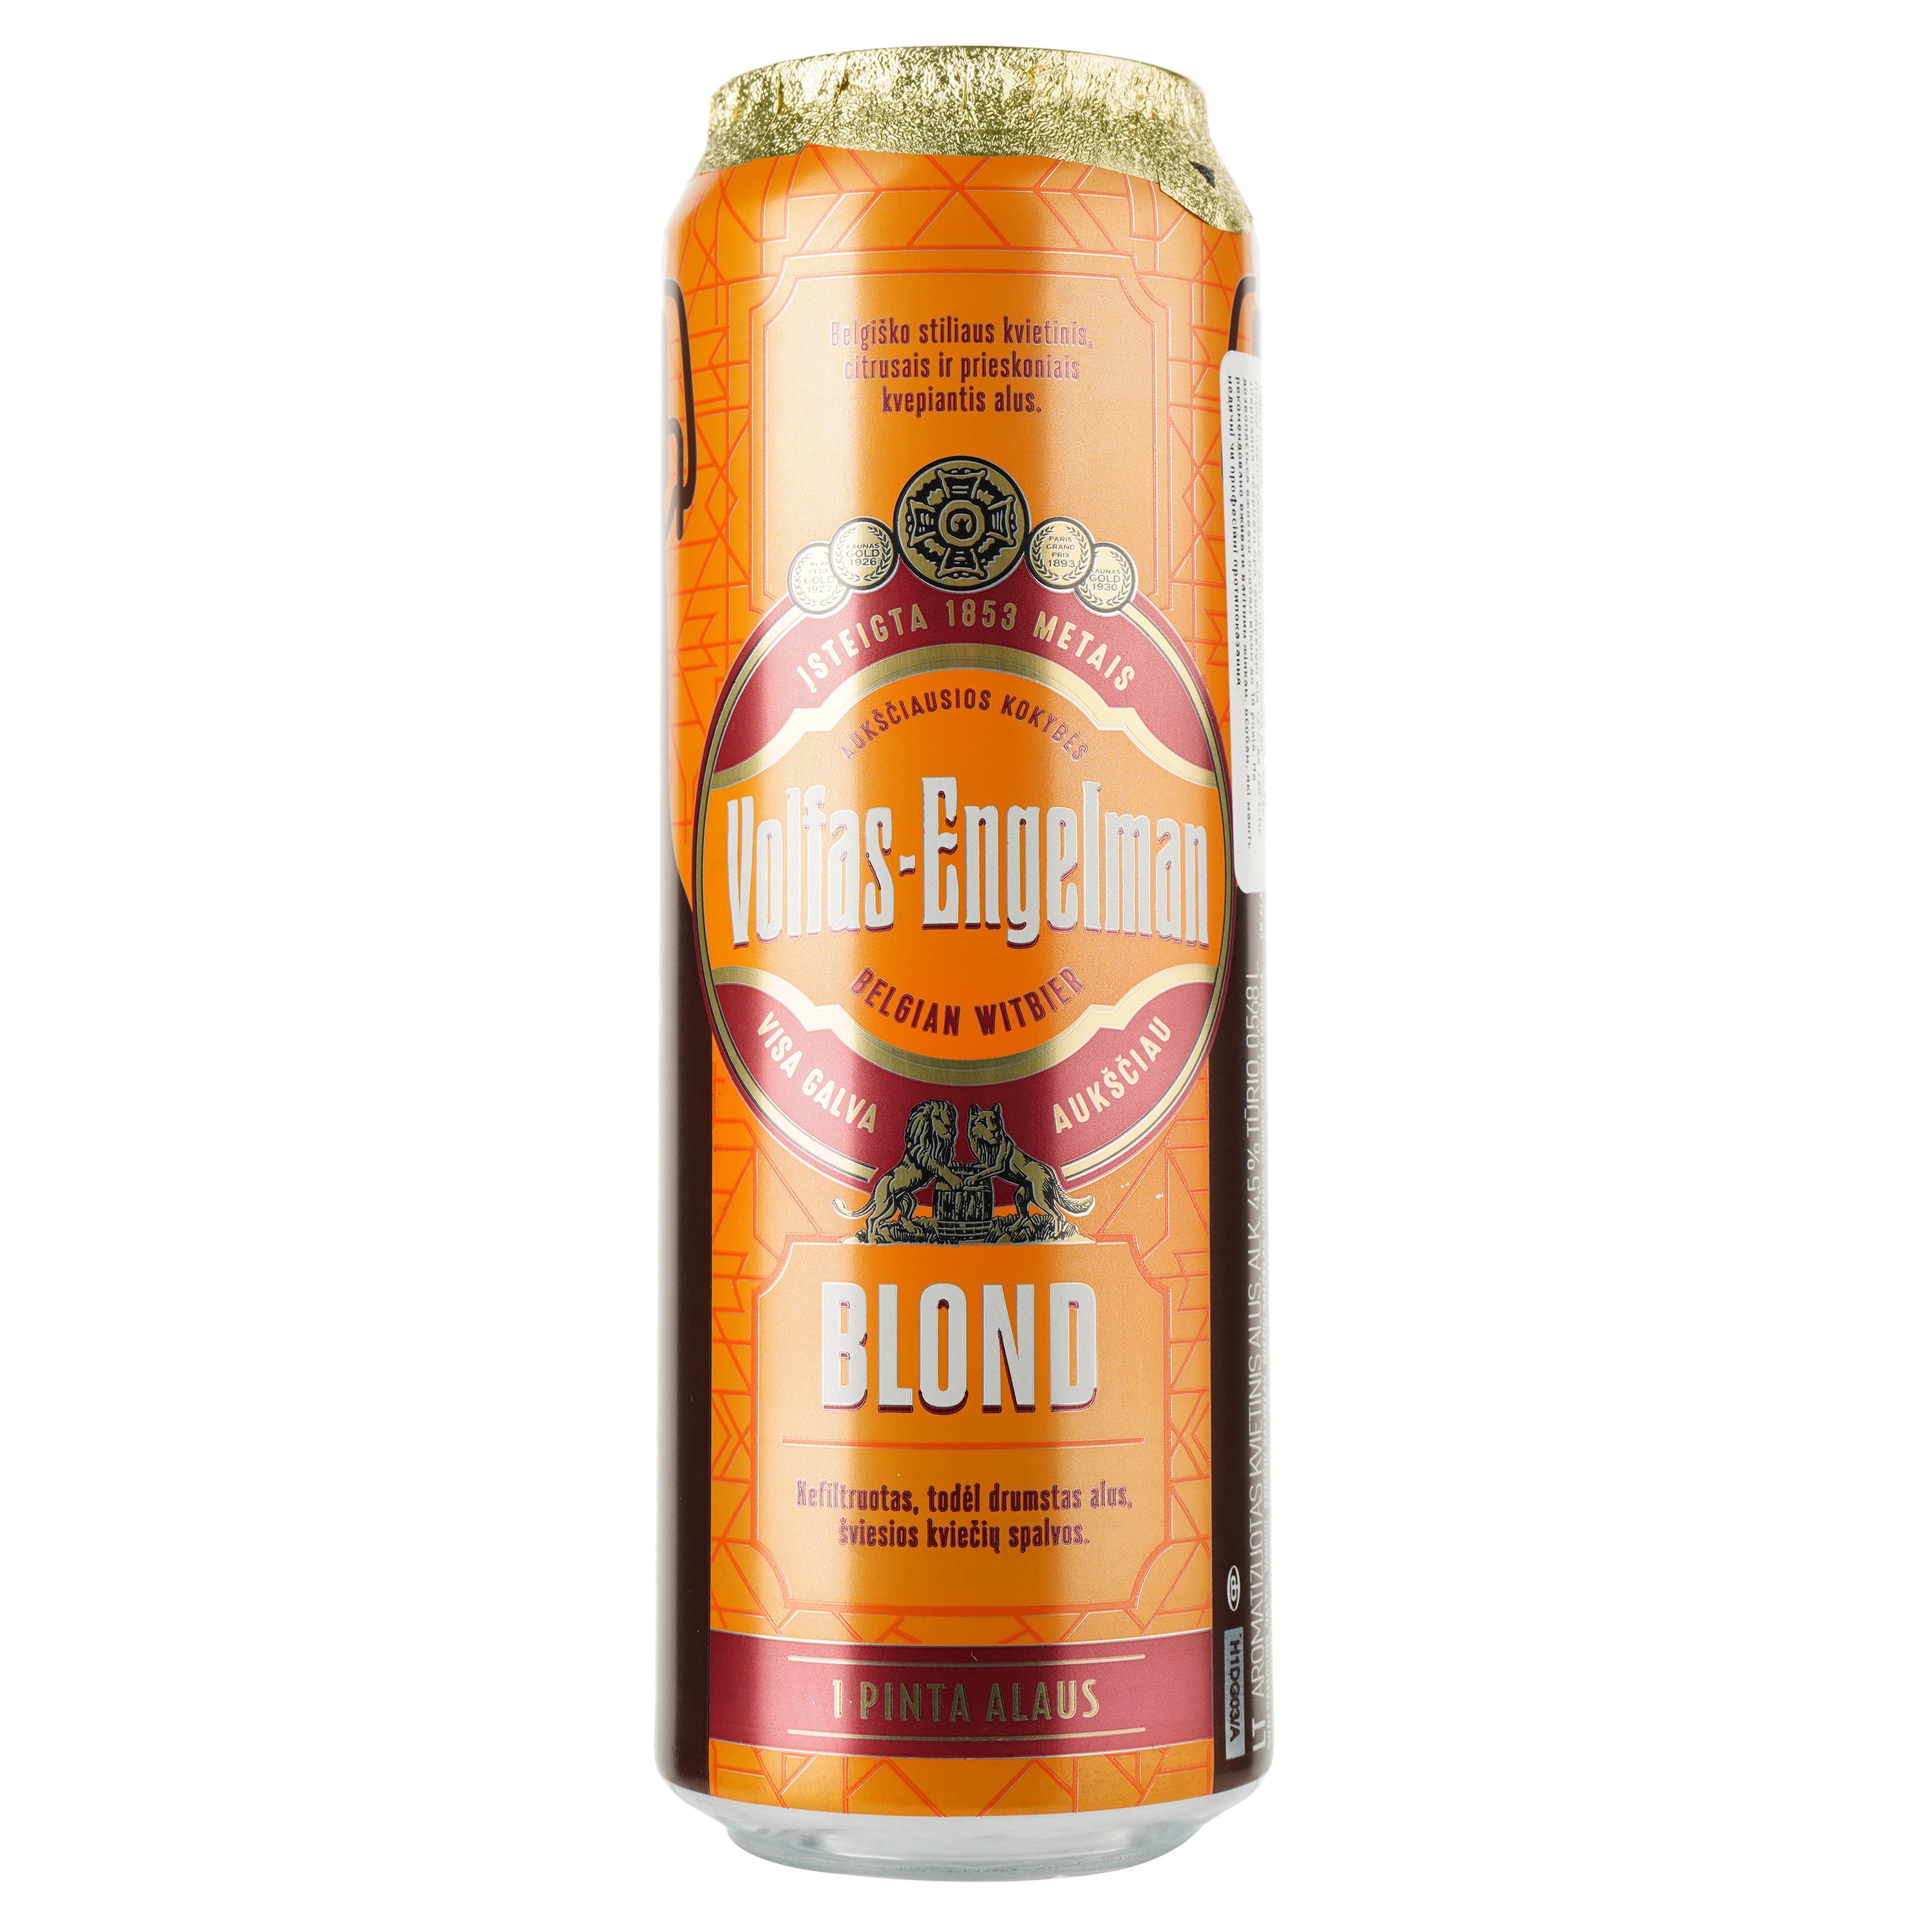 Пиво Volfas Engelman Blond светлое, 4.5%, ж/б, 0.568 л - фото 1